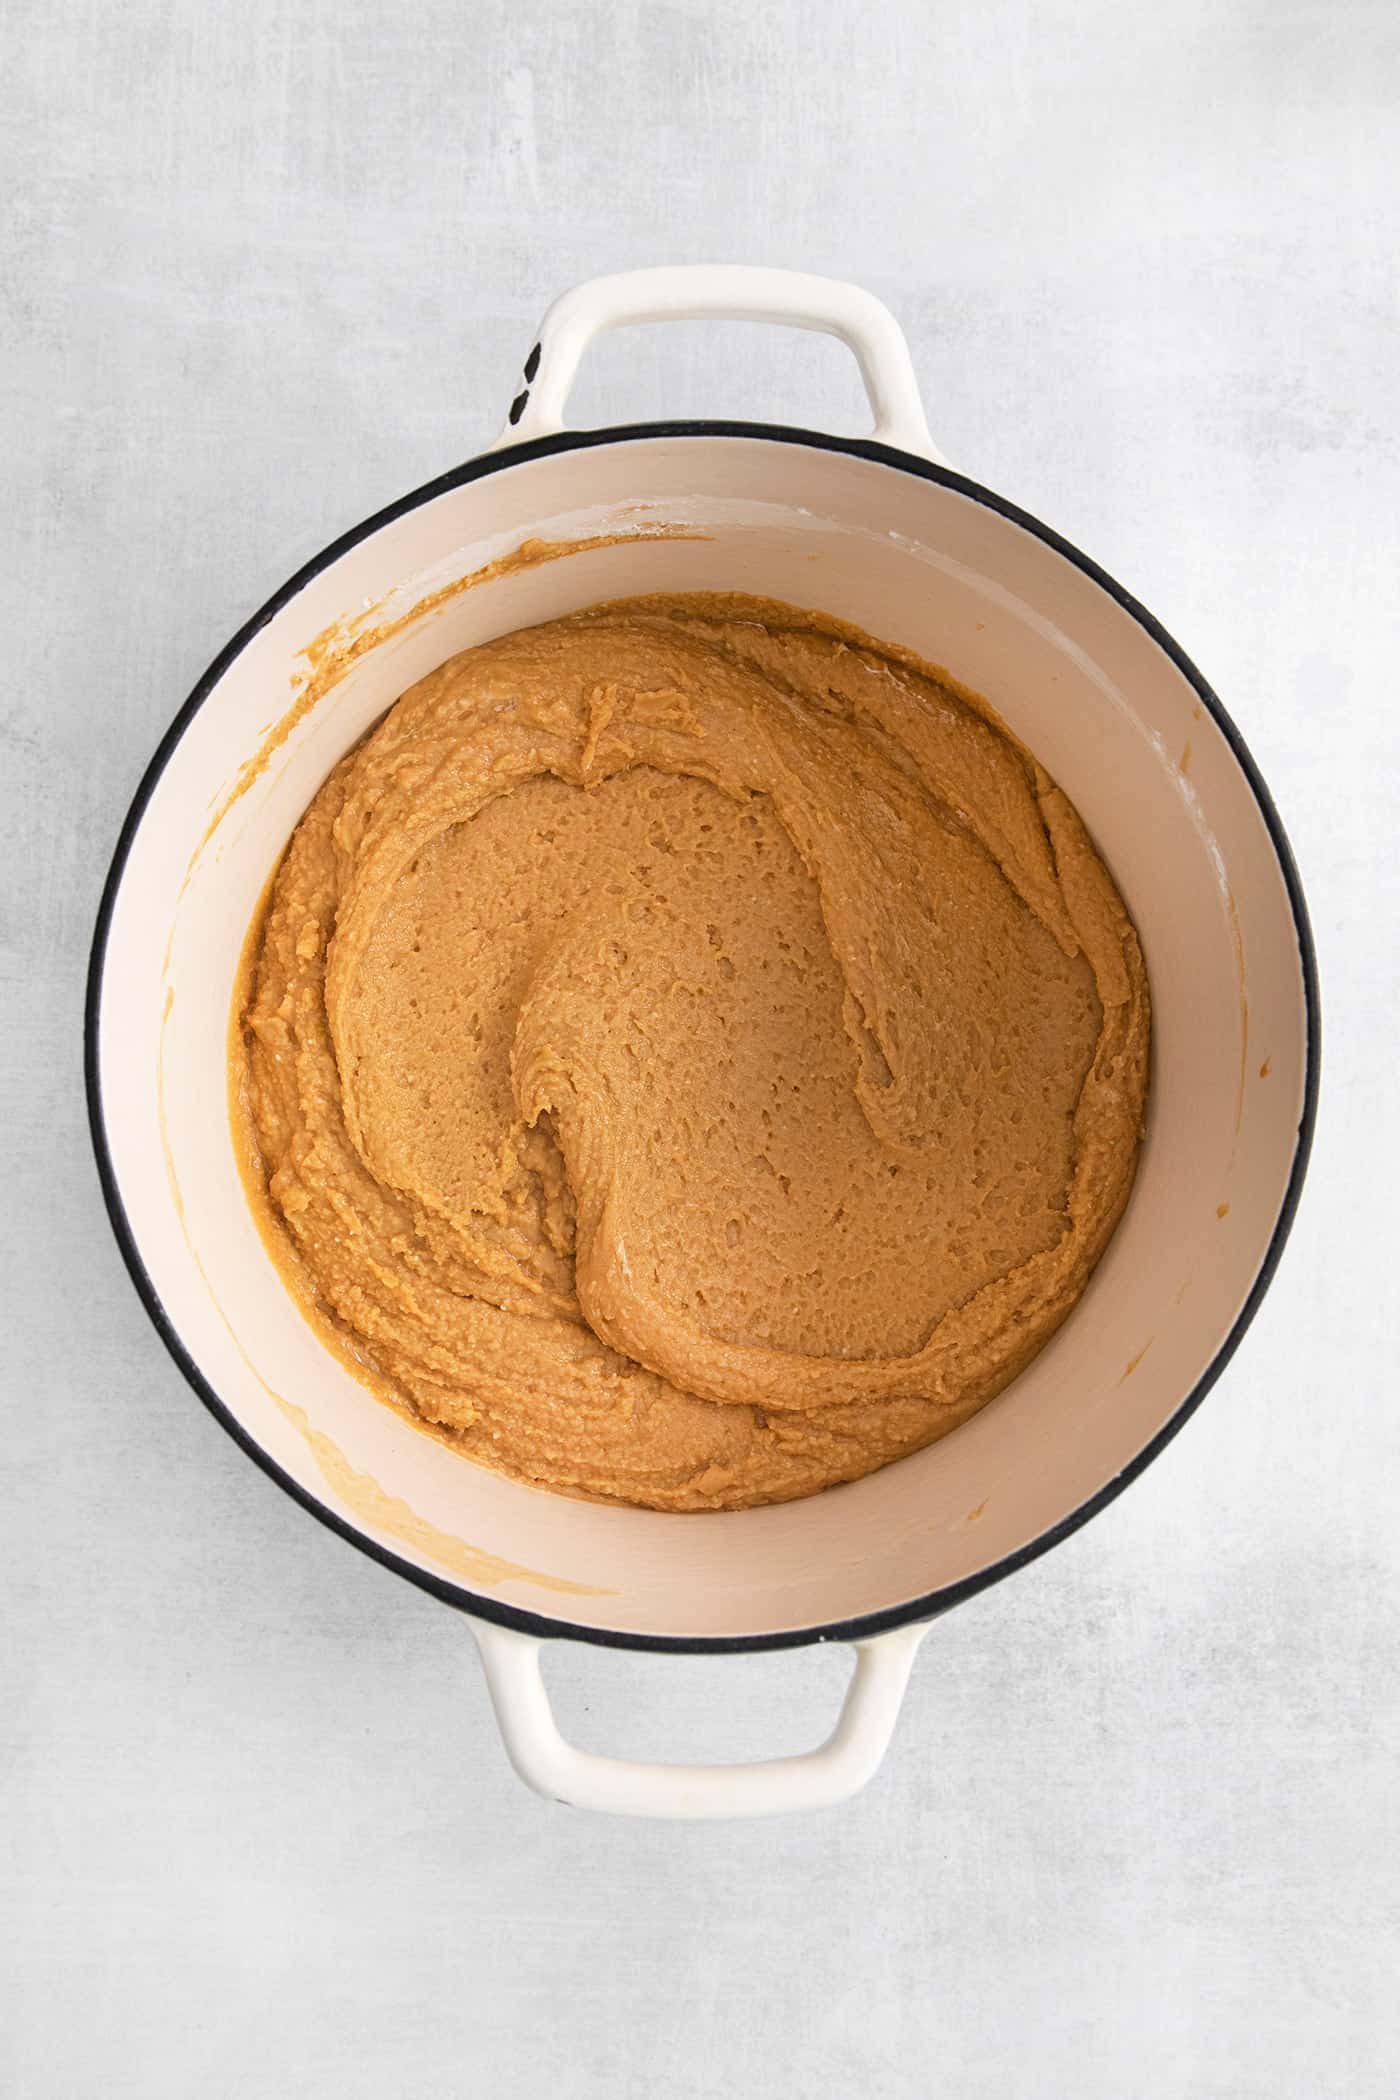 Peanut butter mixture in a saucepot